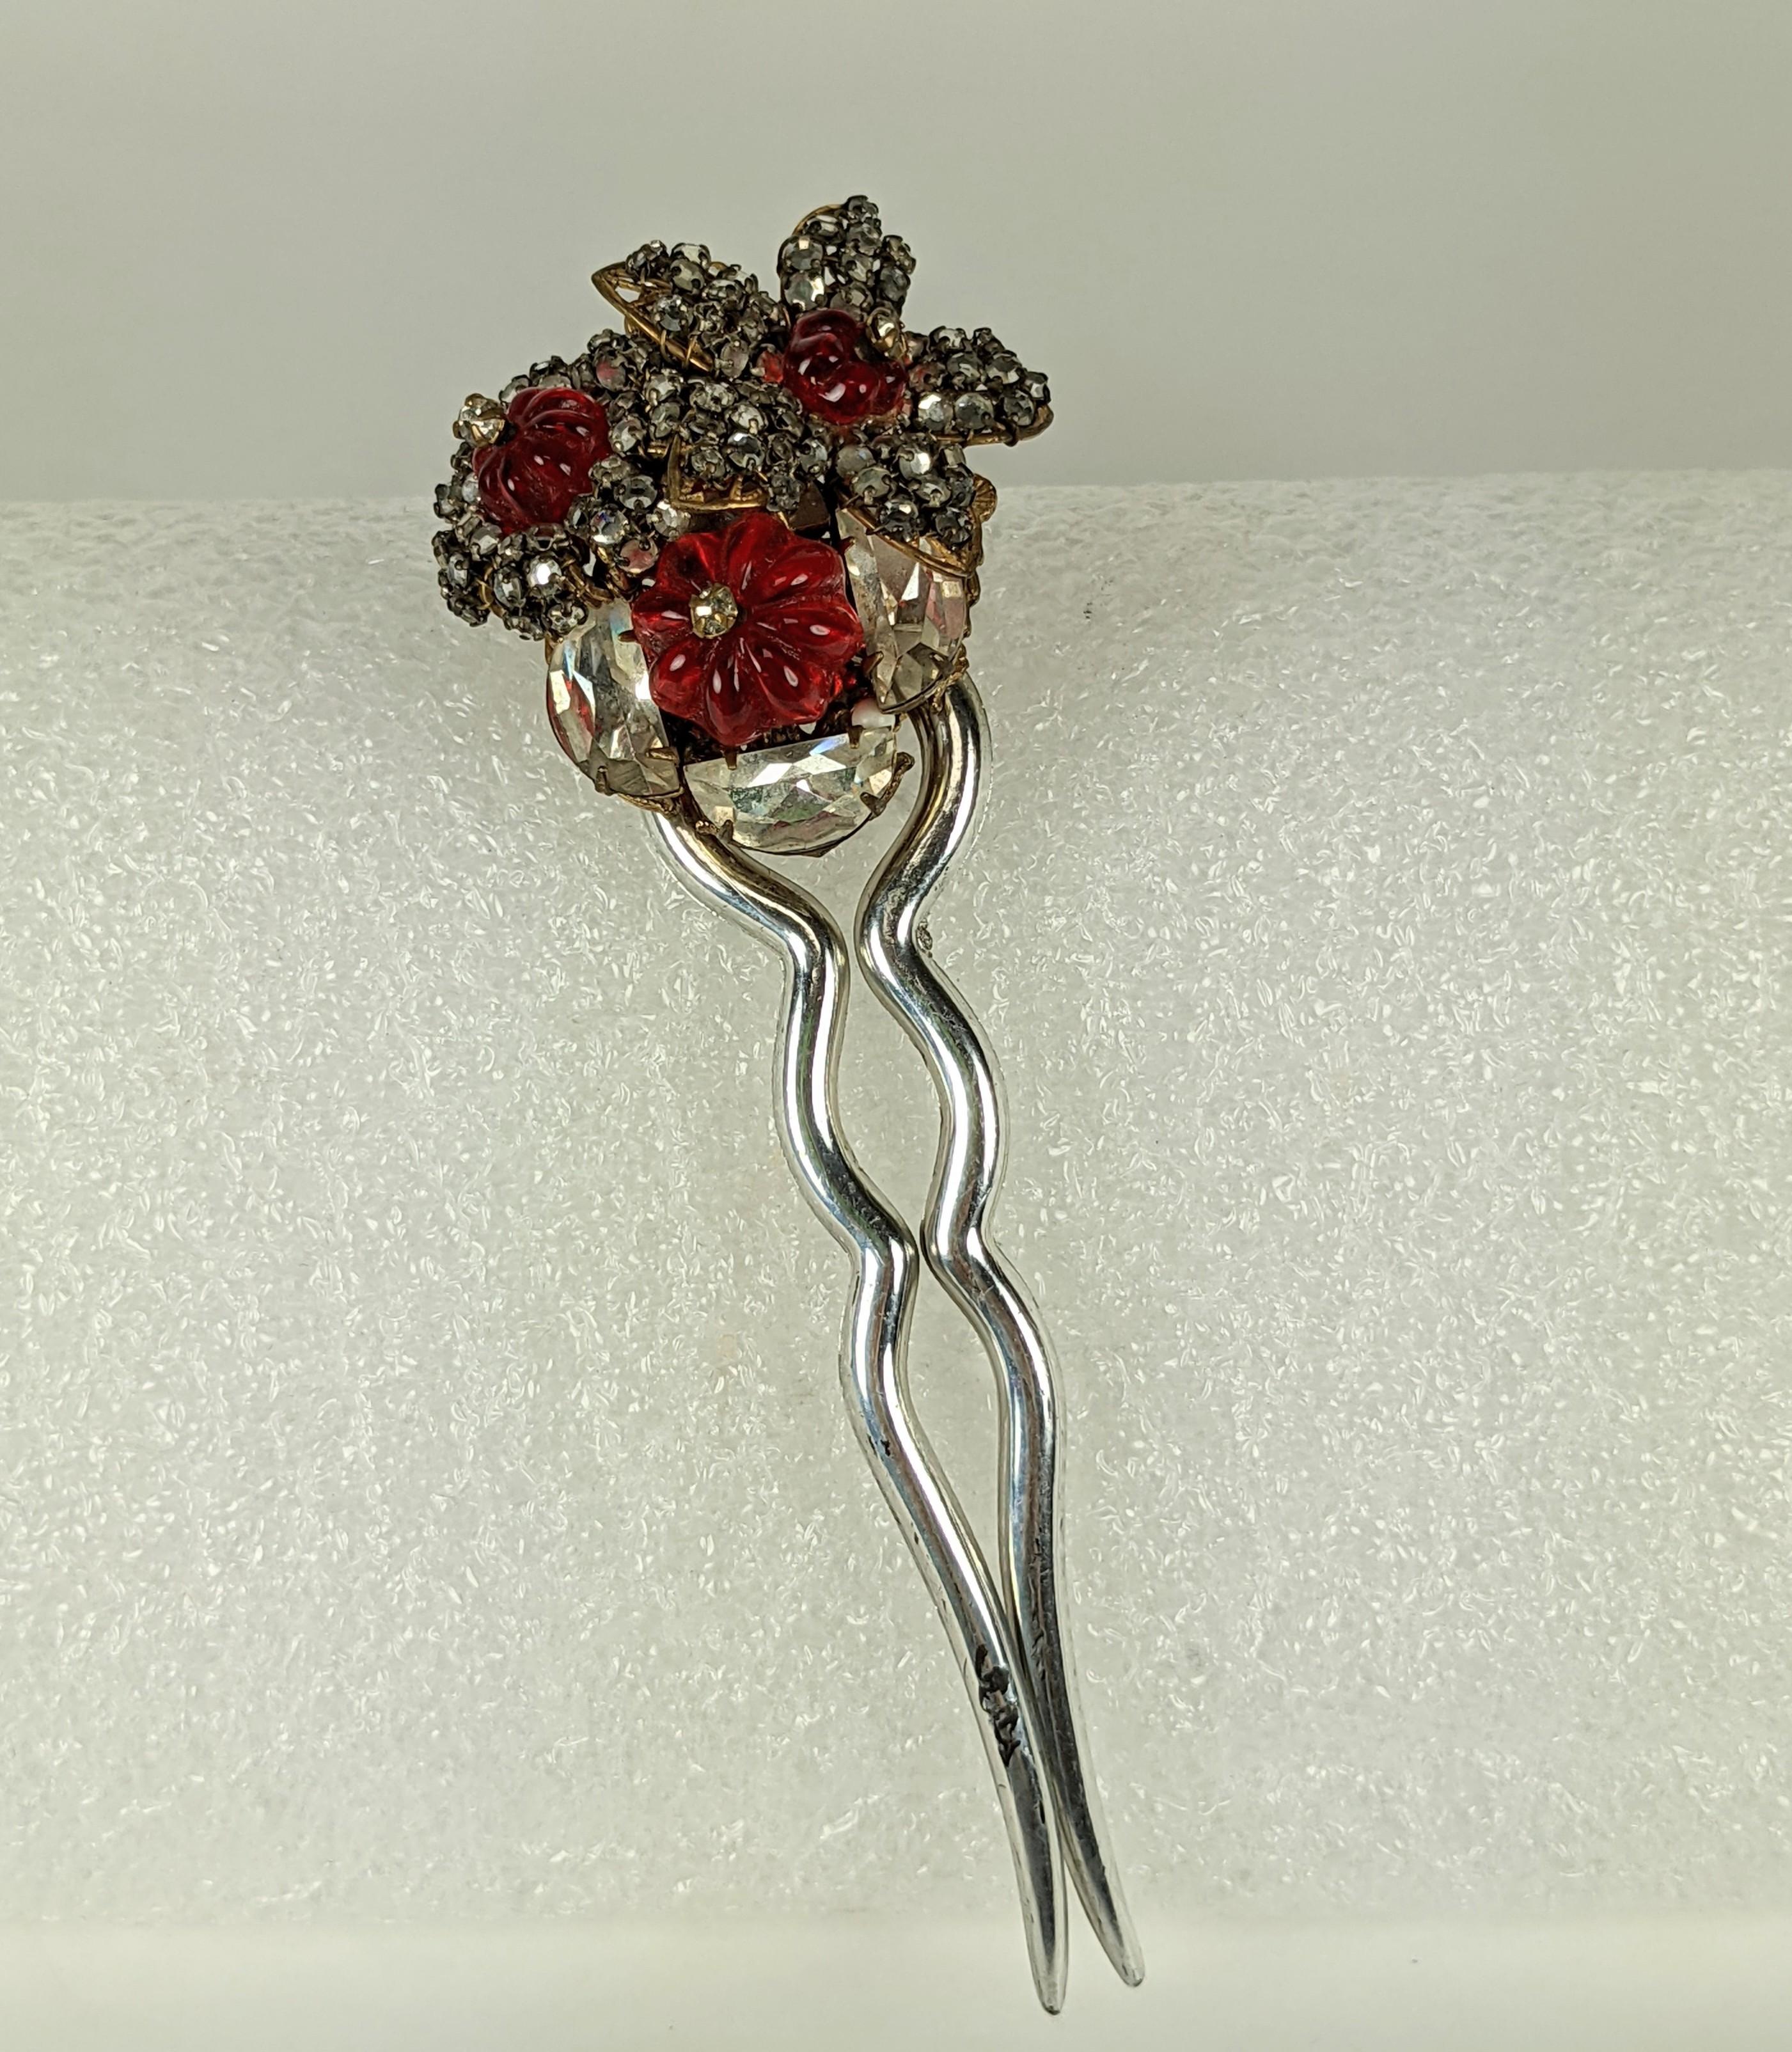 Rare peigne à cheveux Miriam Haskell composé de perles en verre Gripoix rubis taillées en forme de melon, de pierres en cristal demi-lune et de petites roses montées en cristal. Le tout est fixé et cousu à la main sur un support en filigrane de